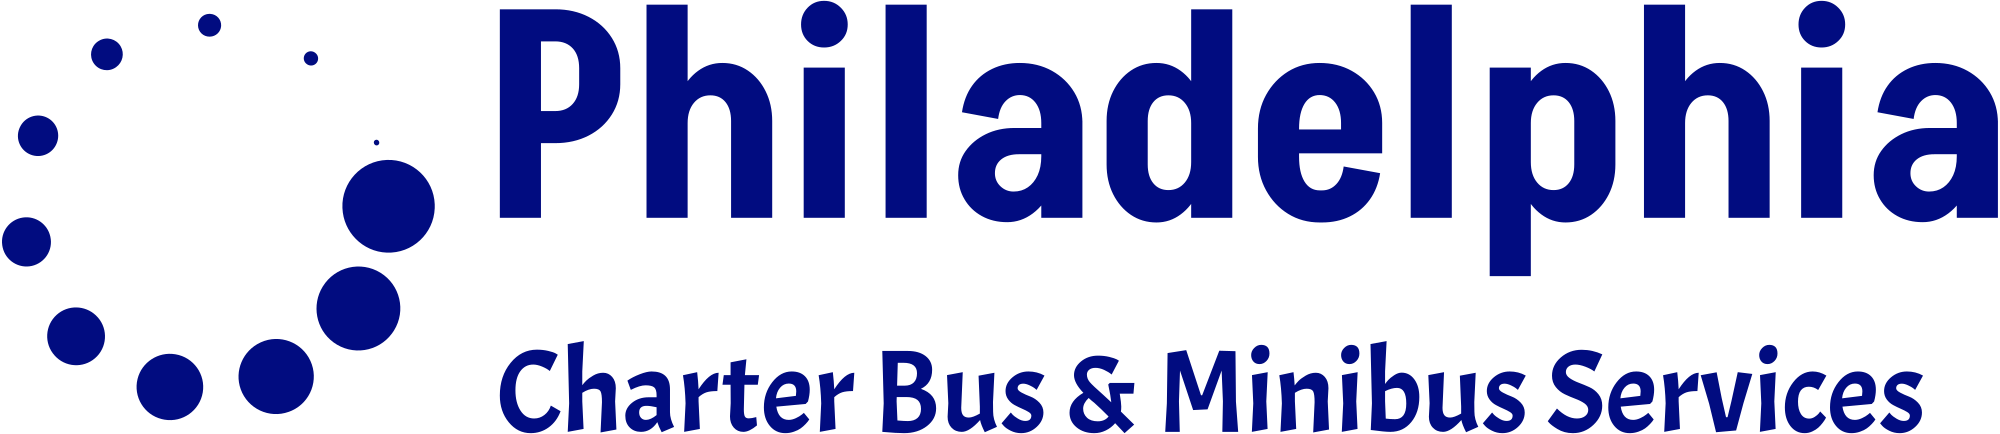 Charter Buses Philadelphia logo